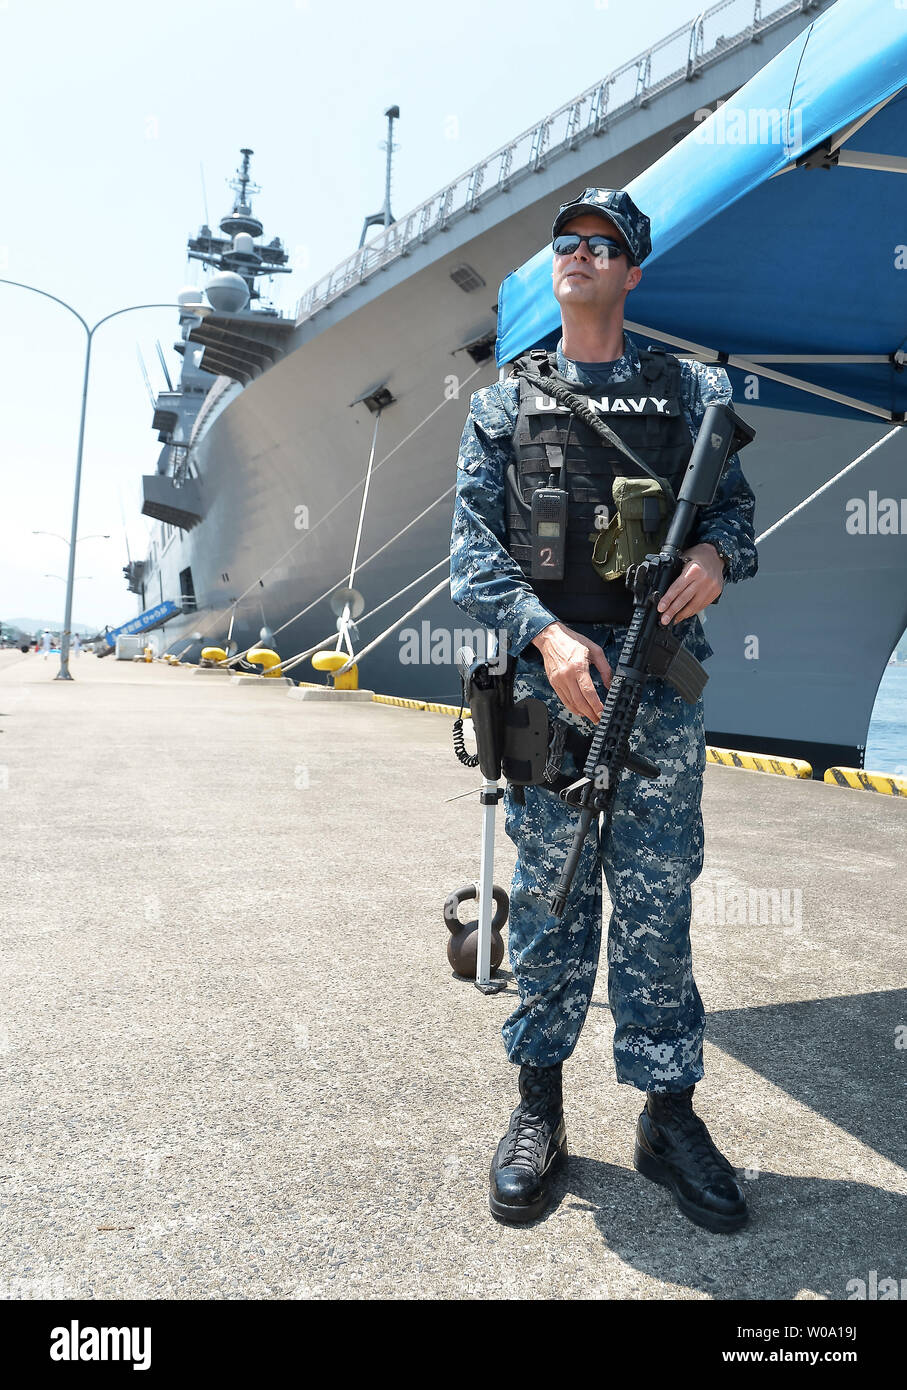 Marinaio di U.S. Navy stand protezione nella parte anteriore del Giappone marittimo Forza di Autodifesa's elicottero destroyer JS Hyuga (DDH181) a U.S. Le attività della flotta Sasebo, Prefettura di Nagasaki, Giappone il 10 giugno 2016. Foto di Keizo Mori/UPI Foto Stock